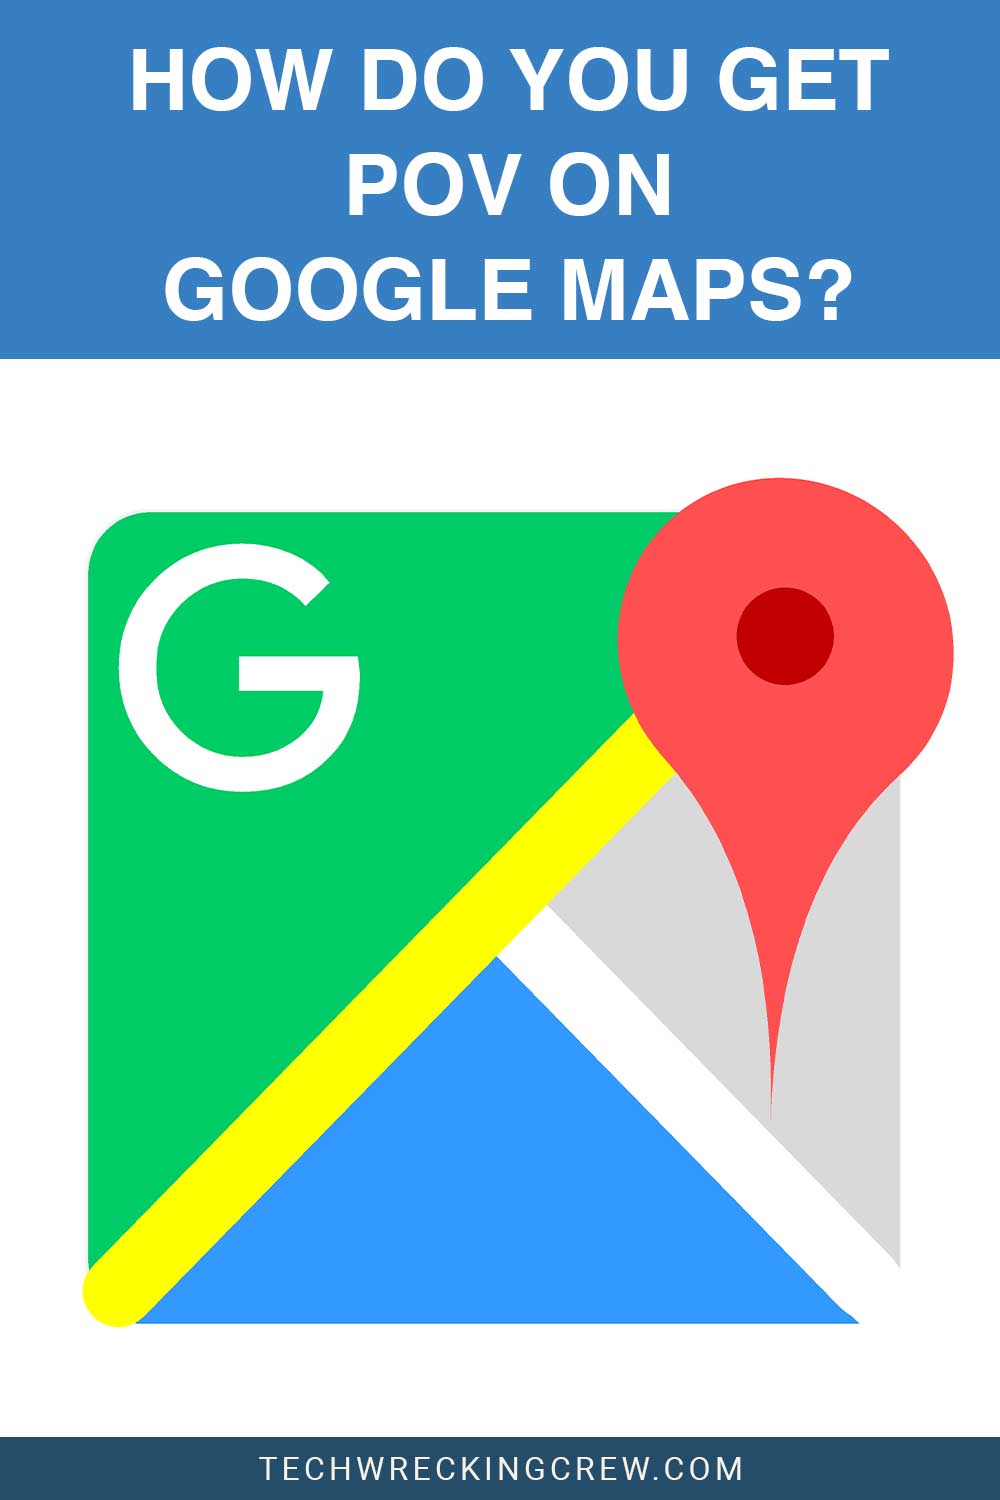 How do you get POV on Google Maps?